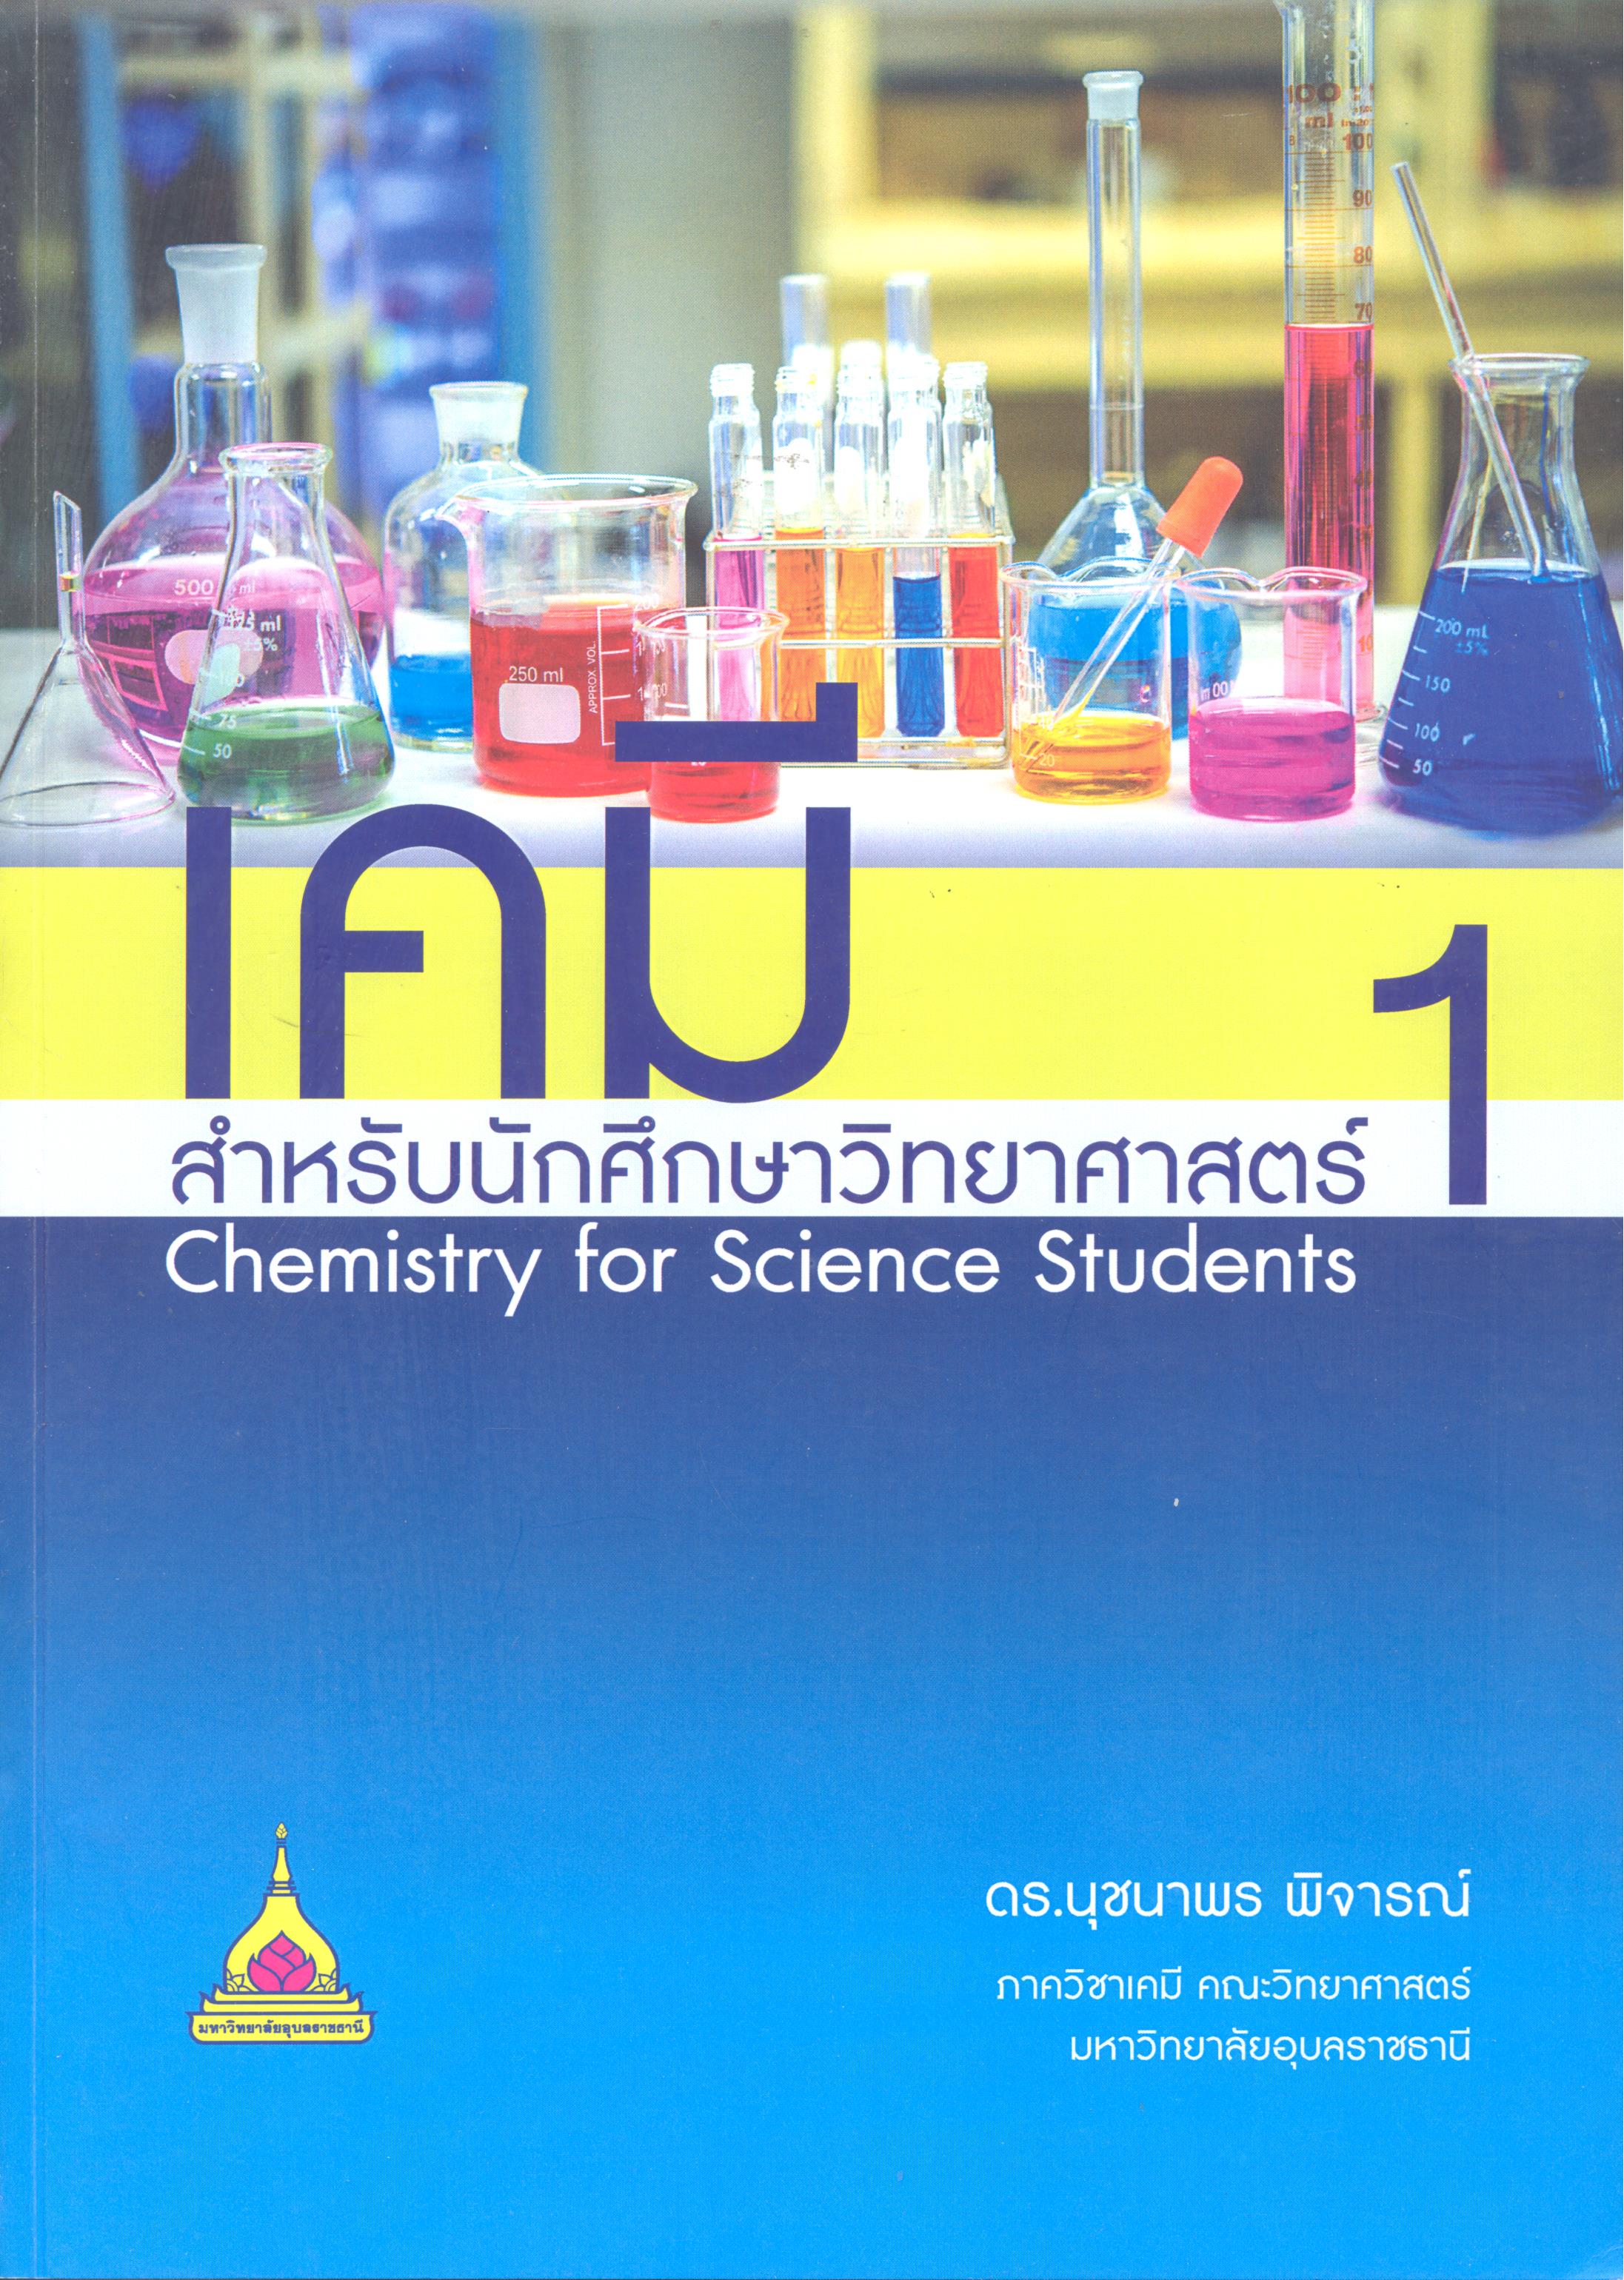 เอกสารประกอบการสอน รายวิชา 1102 106 เคมีสำหรับนักศึกษาวิทยาศาสตร์ 1